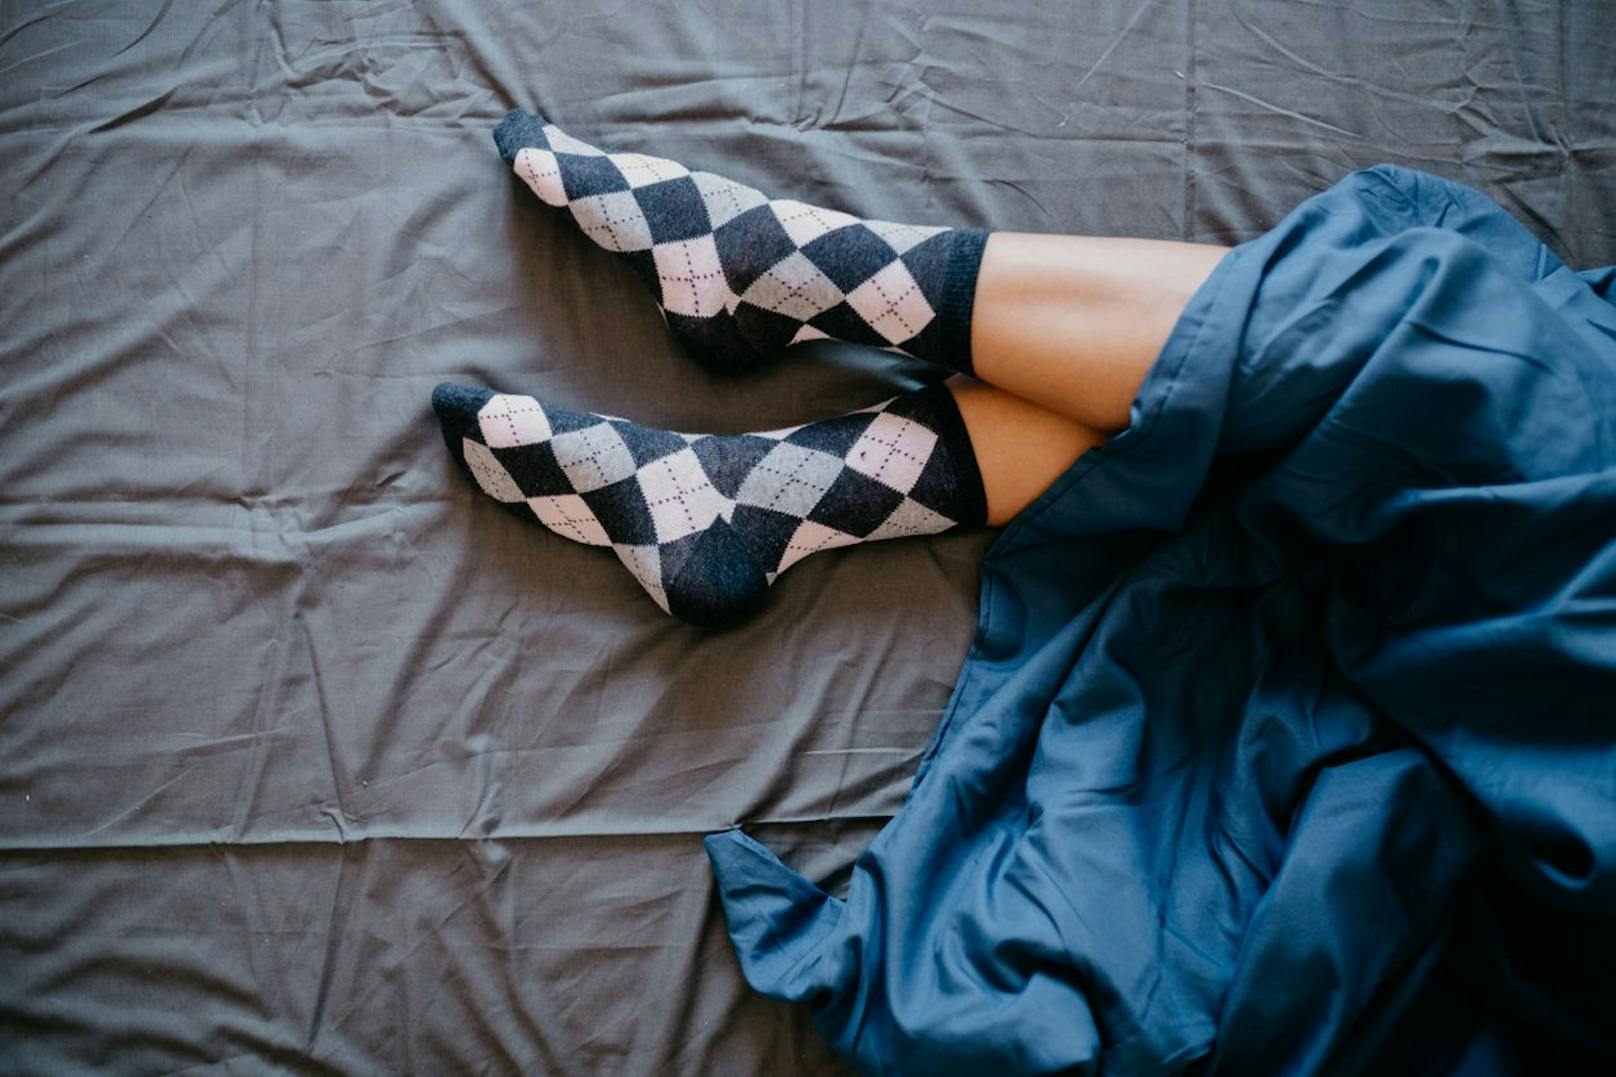 Laut Studien schläfst du schneller ein, wenn du Socken trägst. Diese halten dich warm und senken deinen Blutdruck, damit du aufs Schlafengehen vorbereitet bist. 